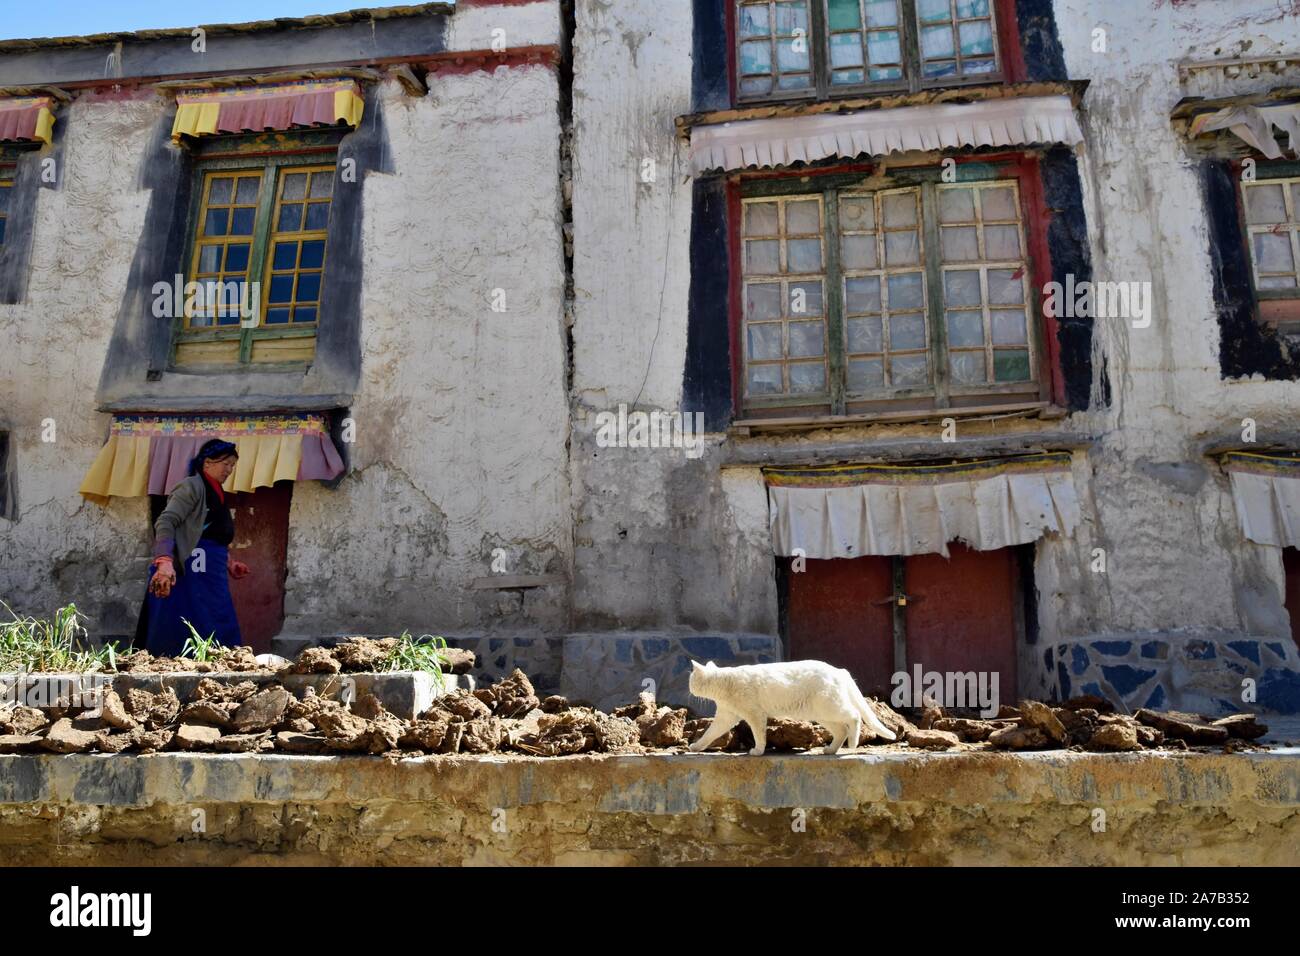 Nach GYANTSE, Tibet - ca. Oktober 2019: eine Frau trocknet Kuh und Yak dungs vor einem Haus in einer alten Stadt Gyantse. Stockfoto